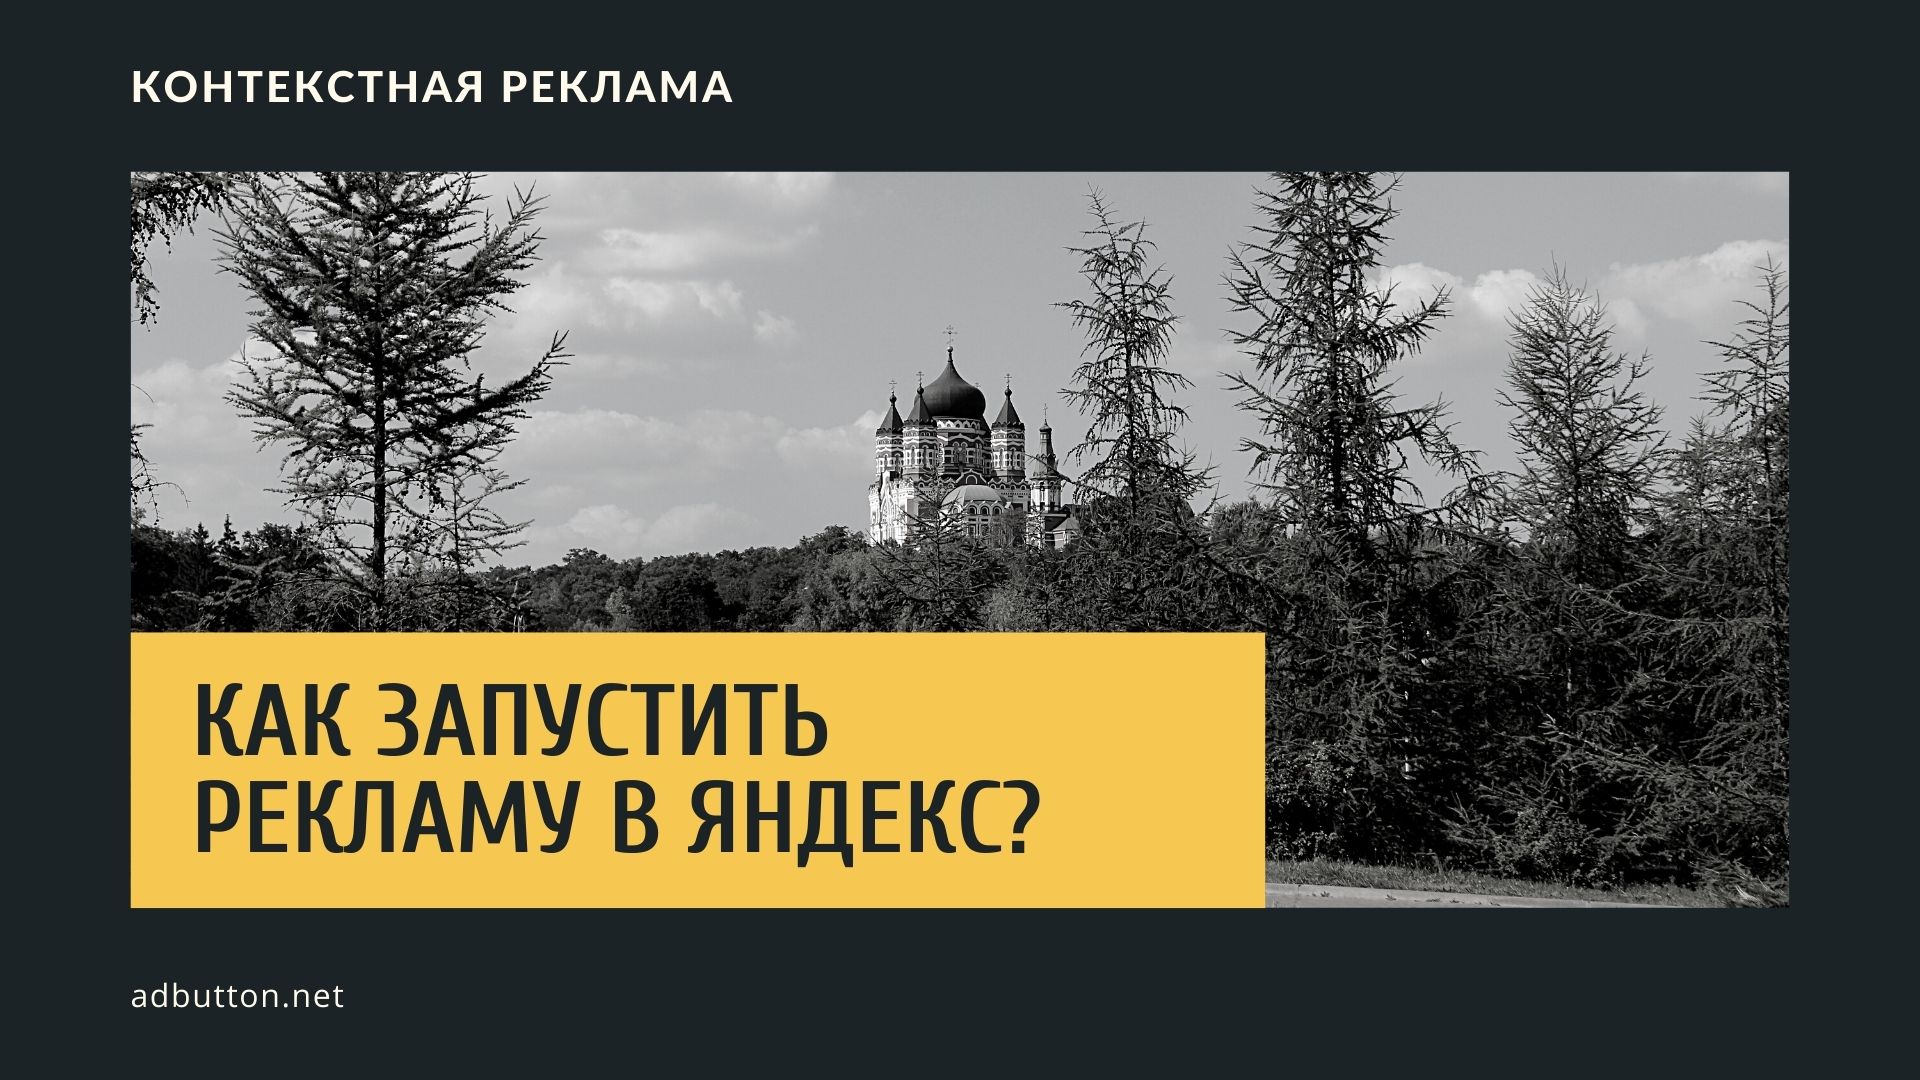 Настройки рекламных объявлений — как запустить рекламу в Яндекс?